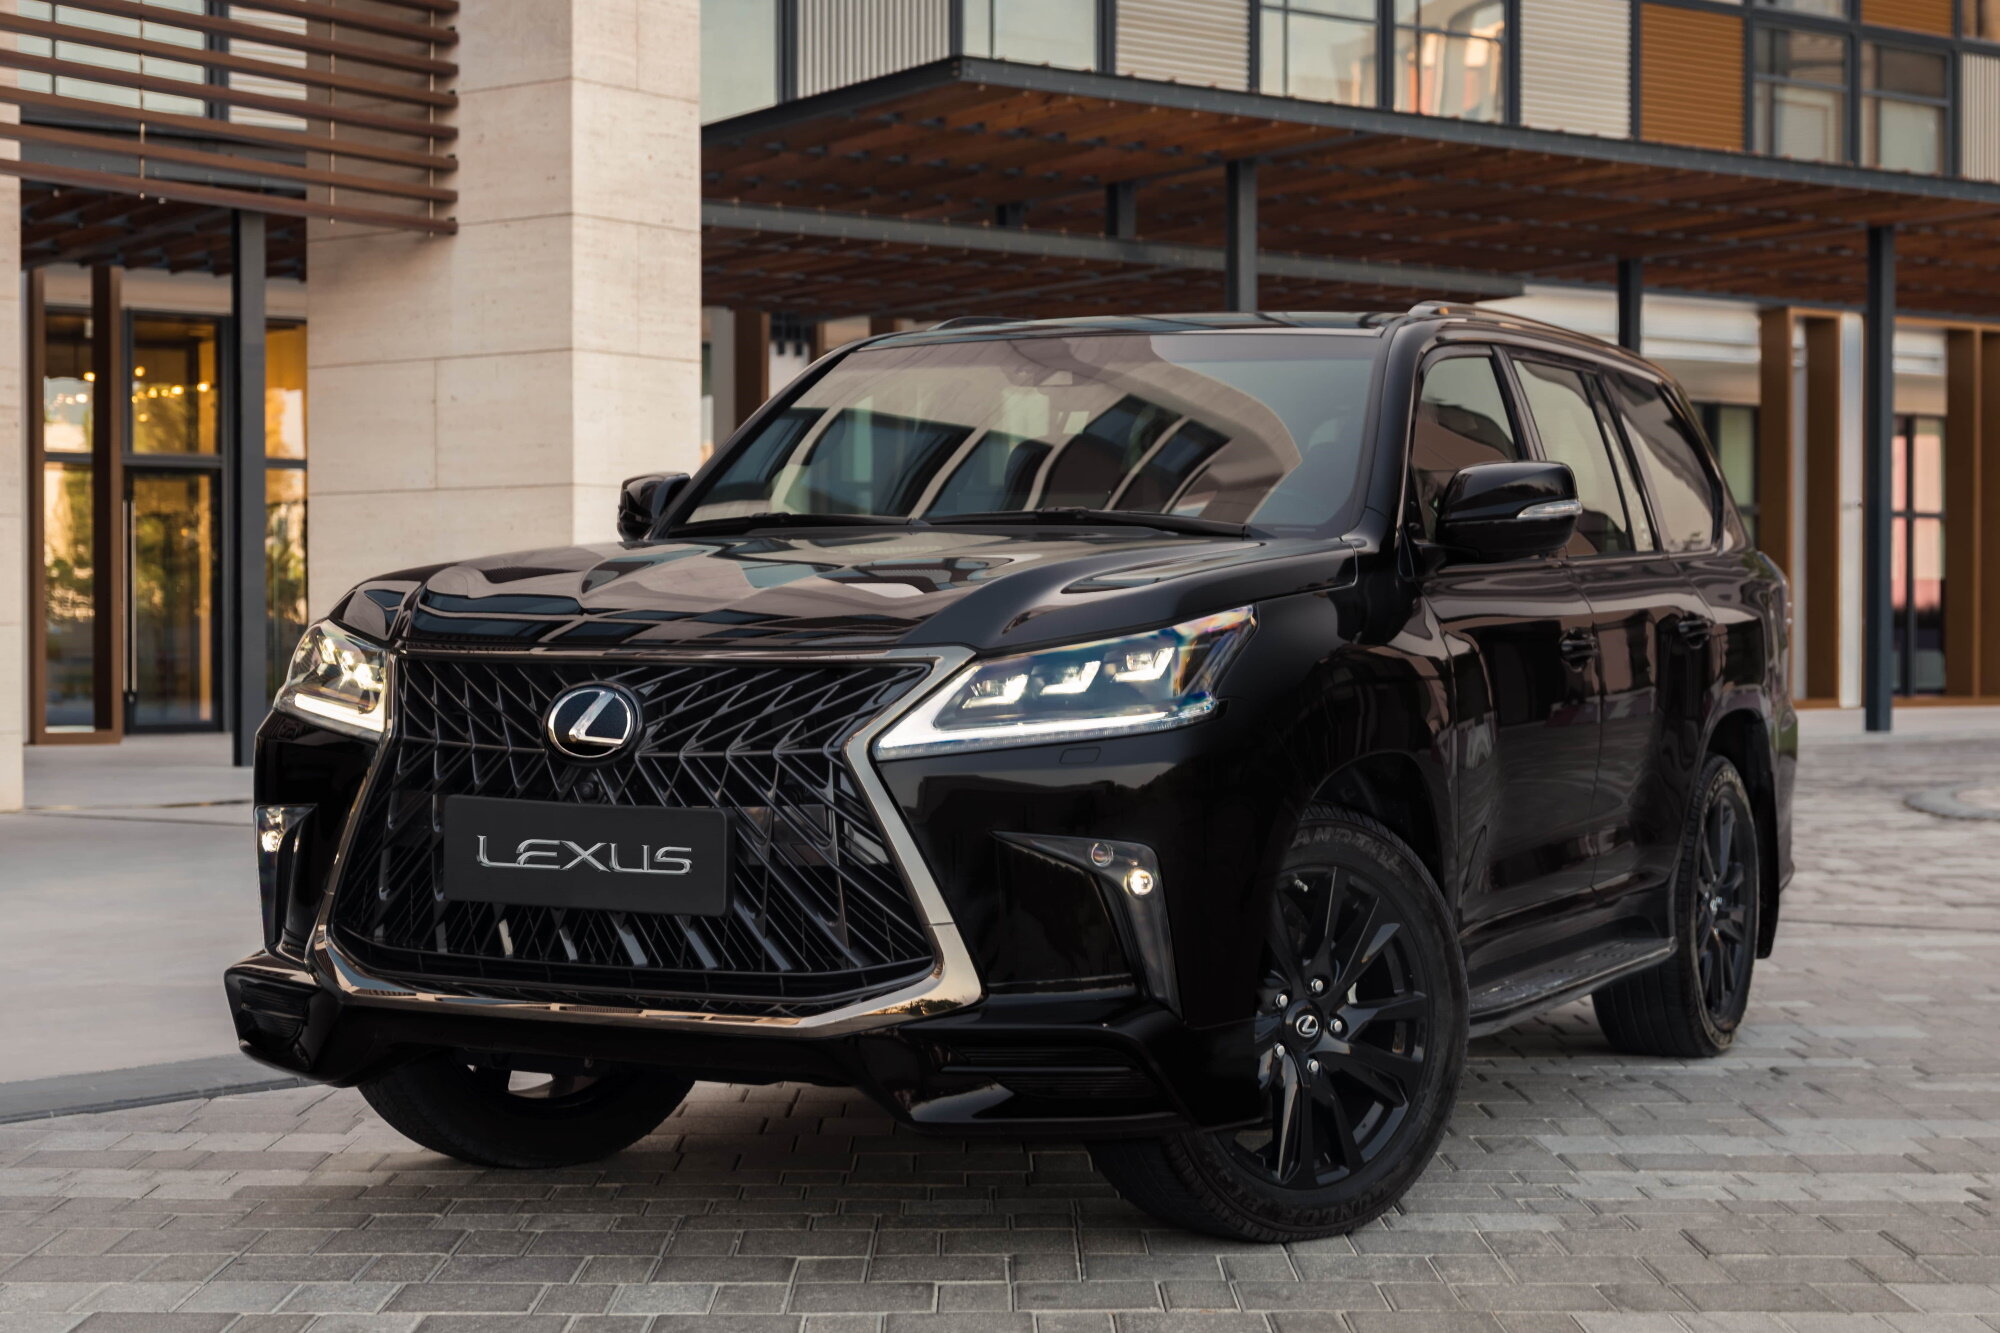 Lexus продолжает создавать отличный имидж бренда